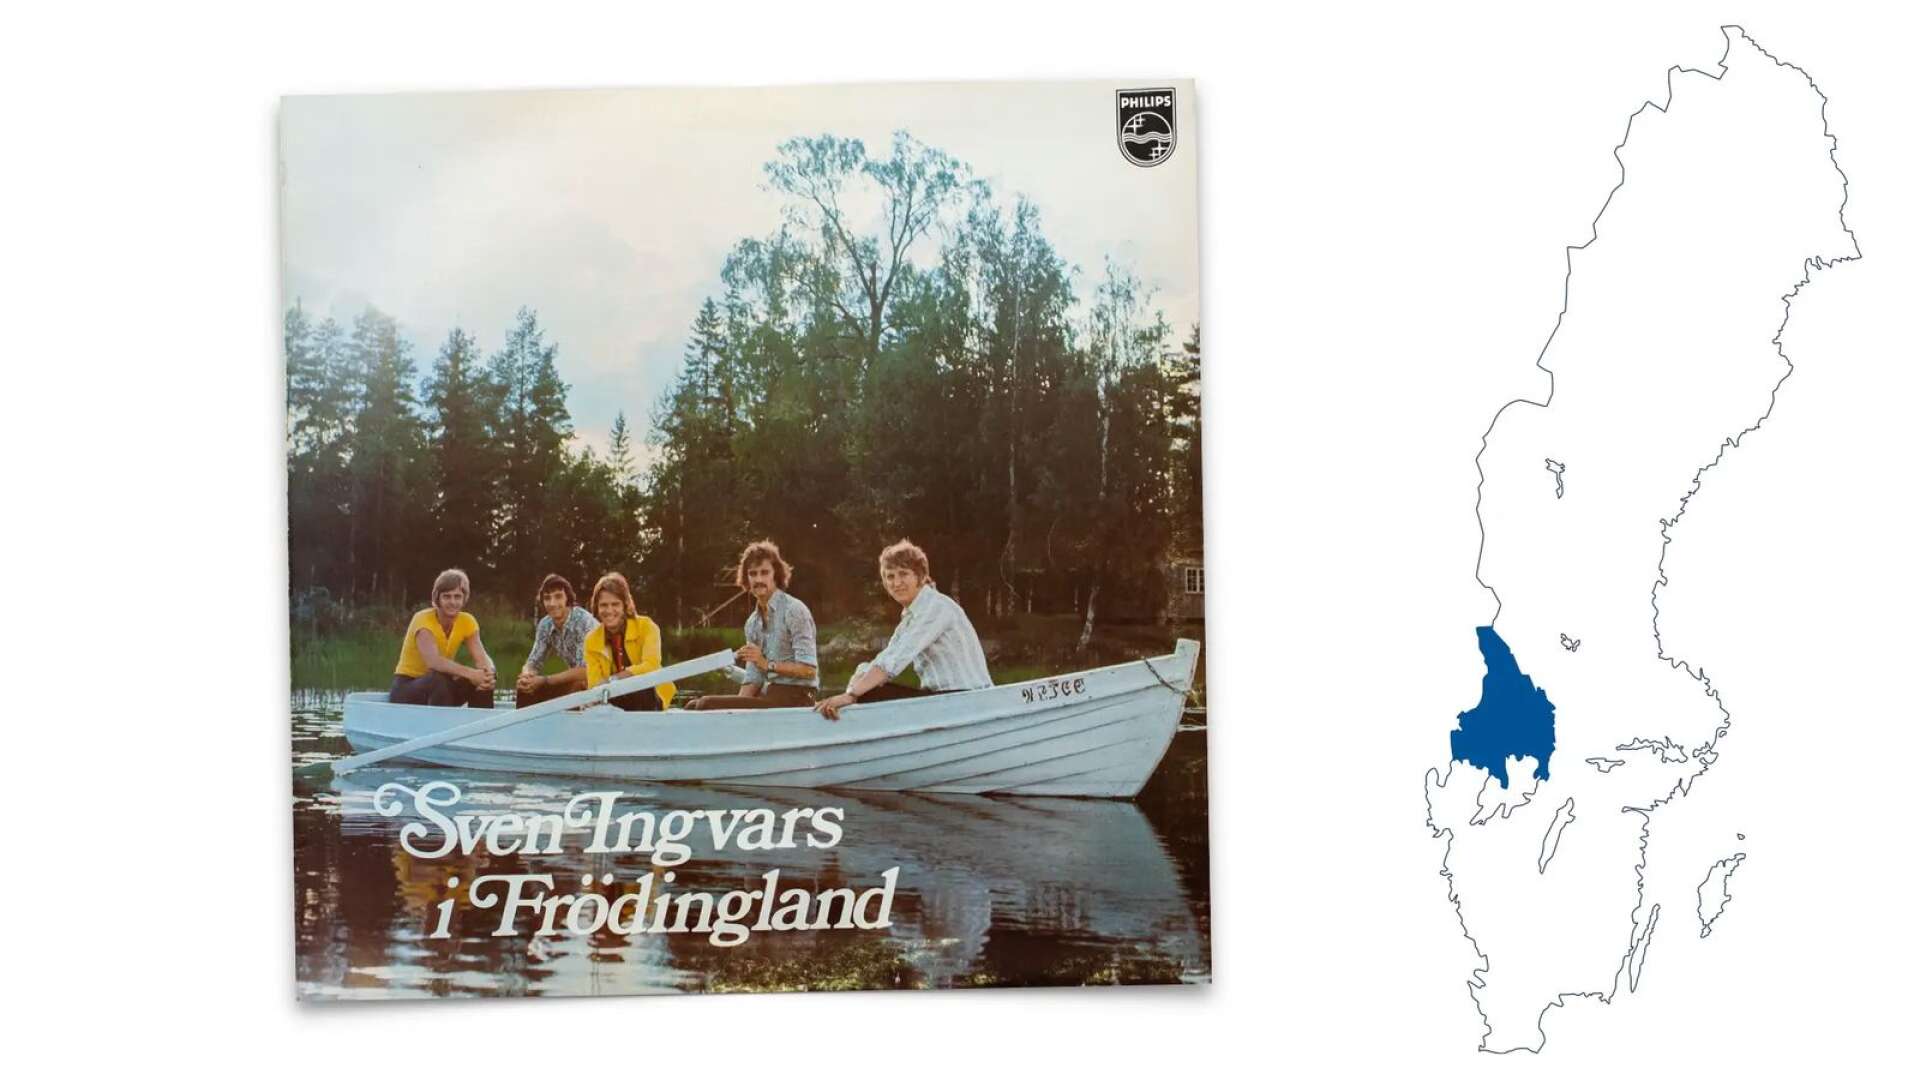 Sven-Ingvars tolkade Fröding och gjorde succé. Nu ska skivomslaget representera Värmland i en stor turismkampanj.